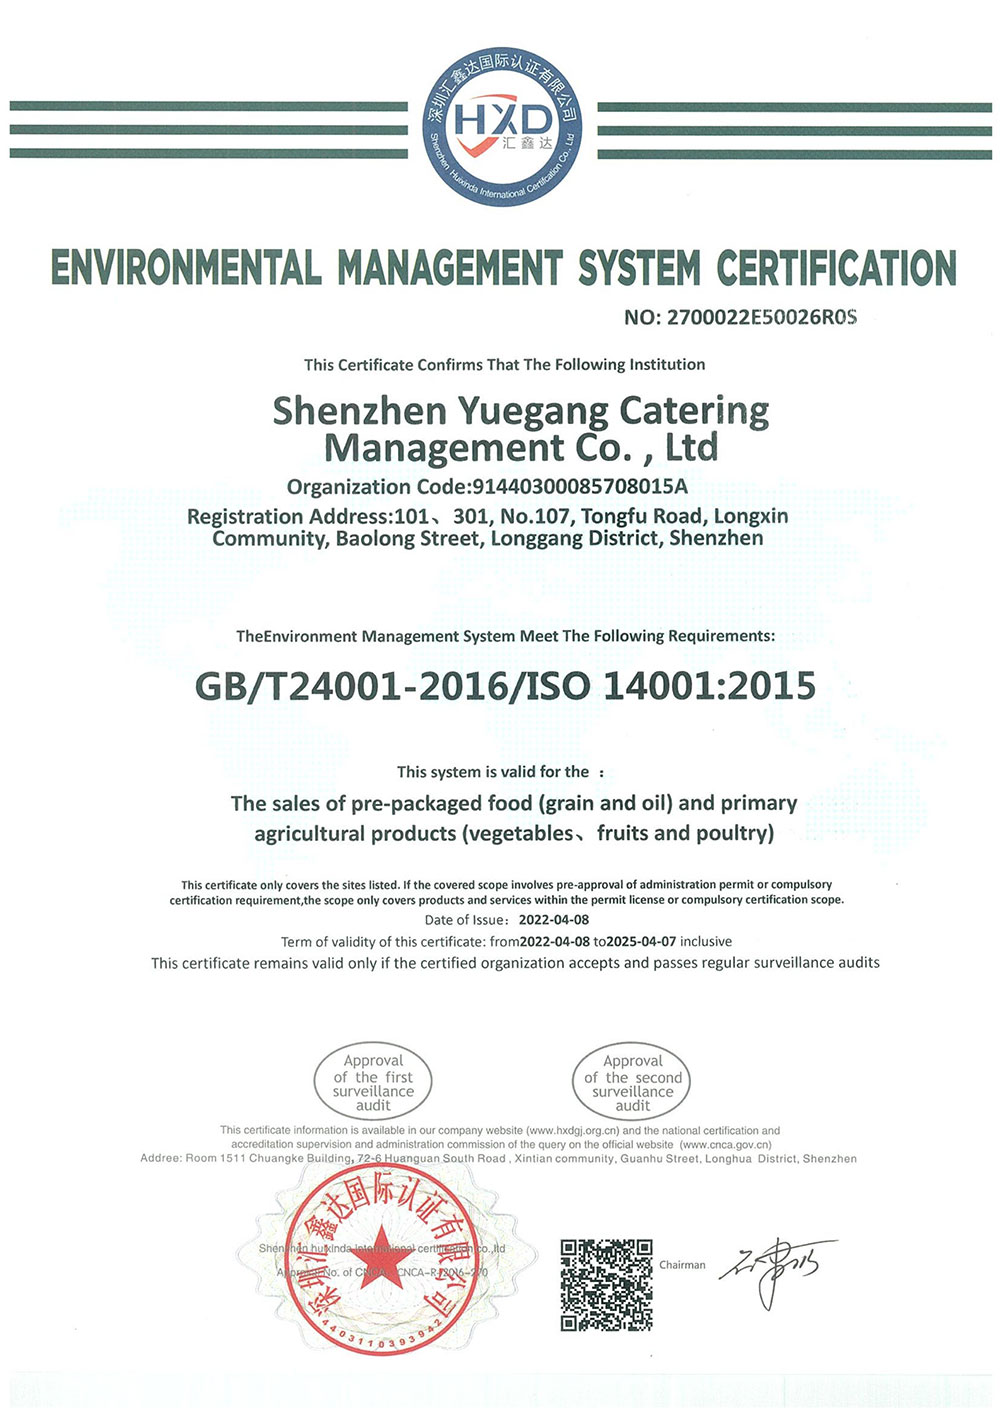 环境管理体系认证证书2品牌荣誉粤岗蔬菜配送